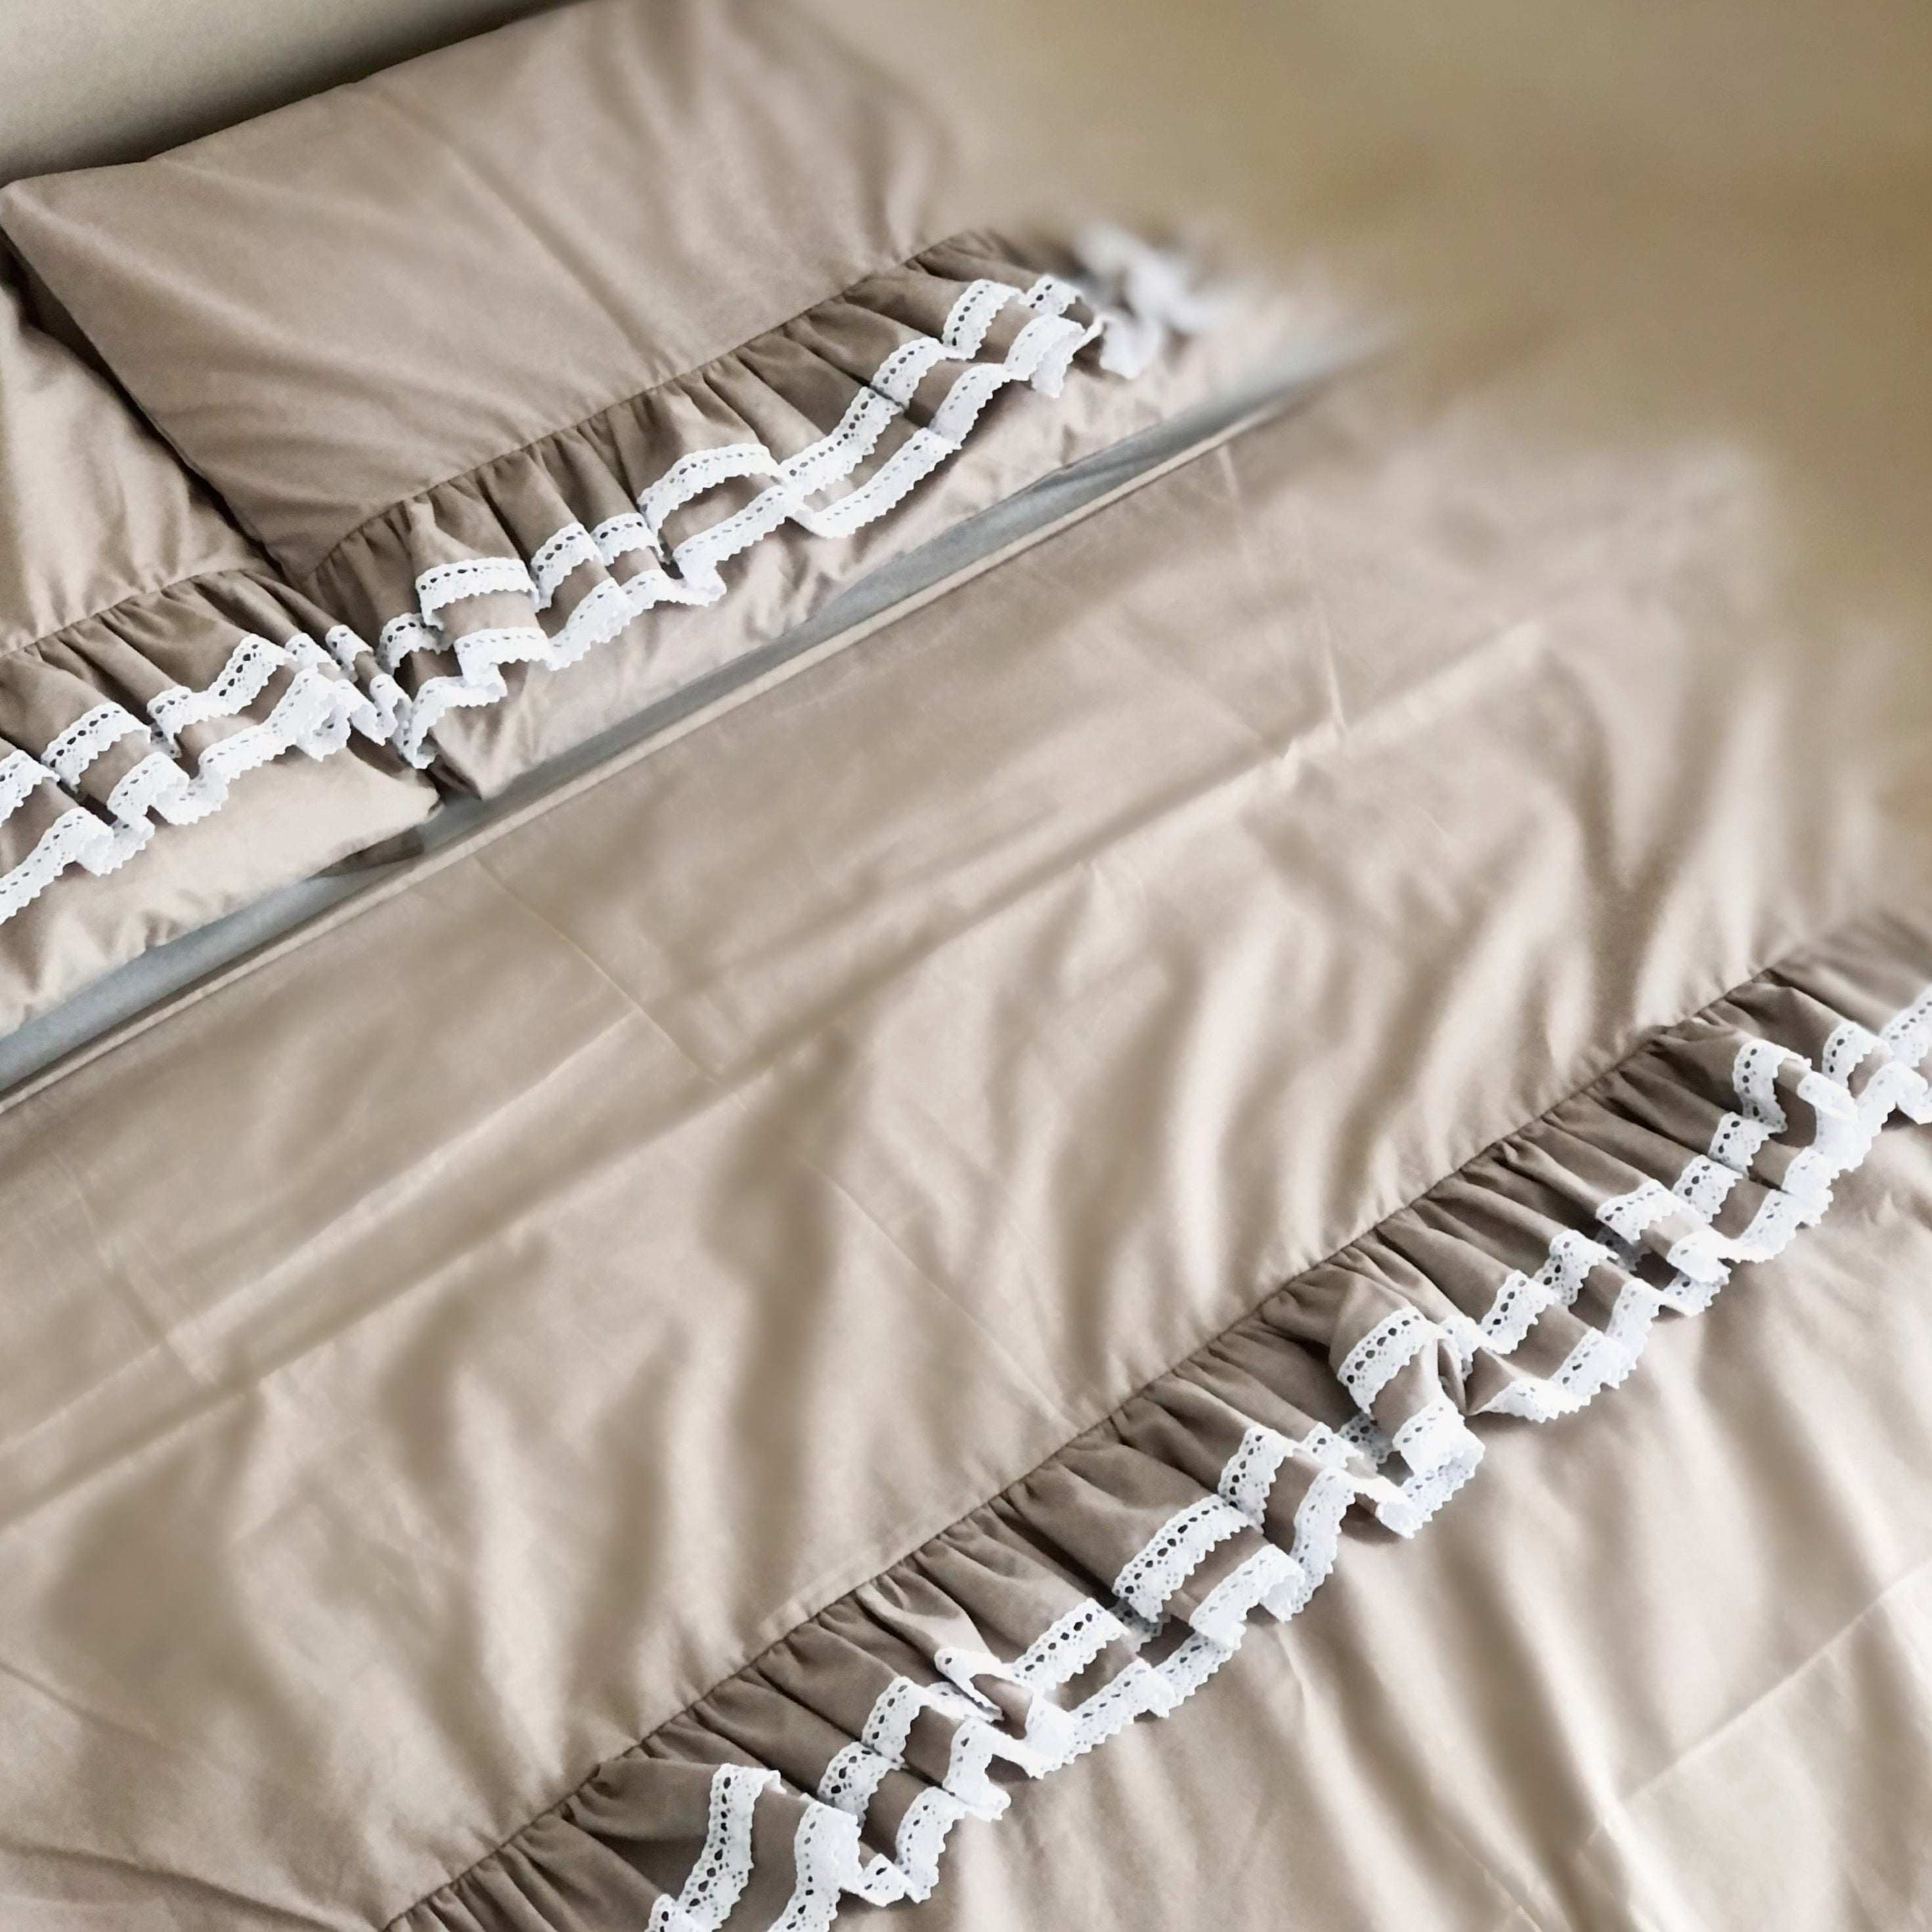 Erwachsenen Bettwäsche Romantic mit Rüschen & weißer Spitze